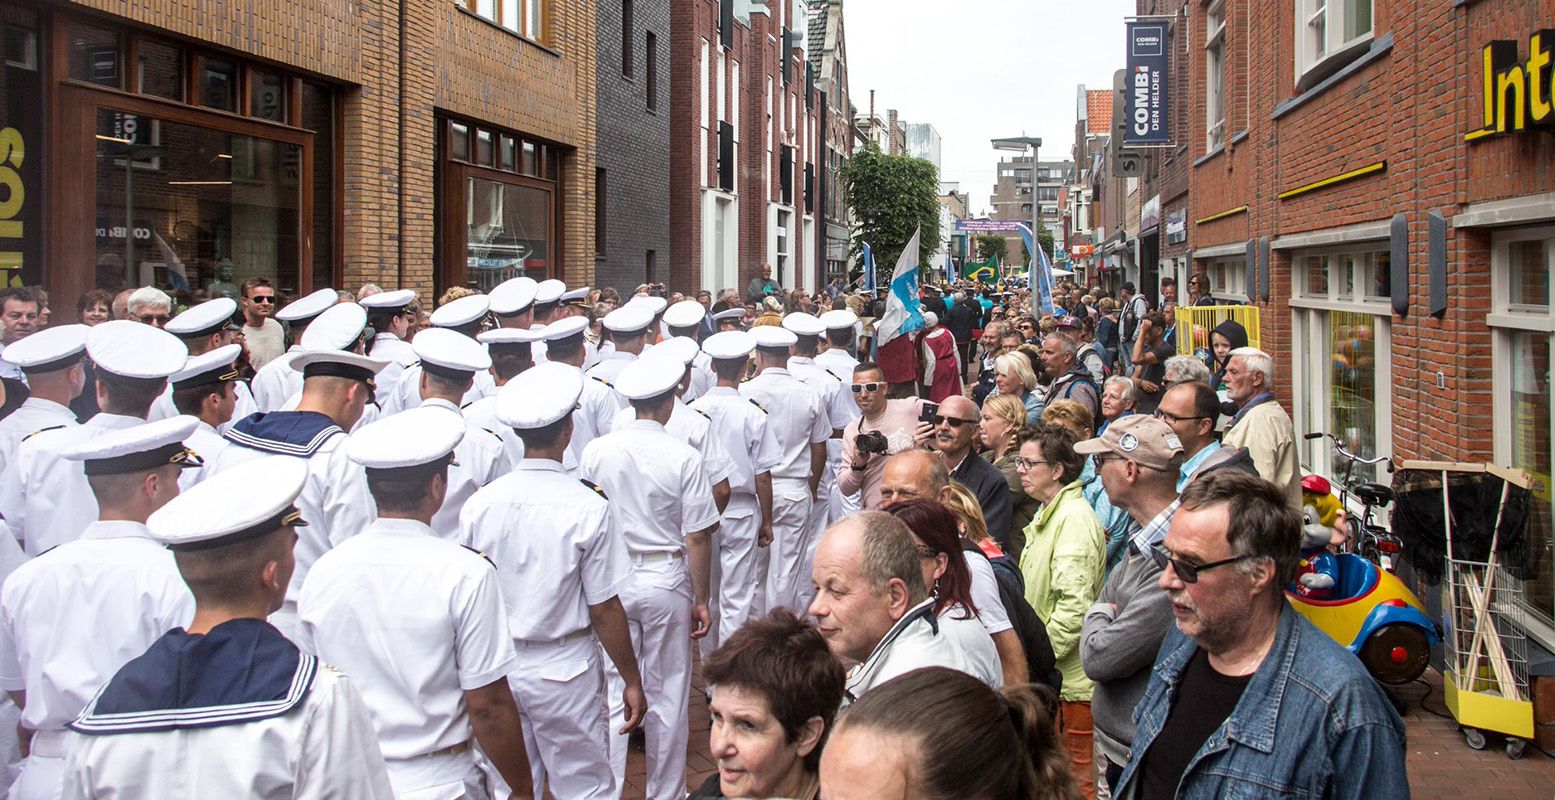 Vast onderdeel is de crew parade door de stad. Foto: Citymarketing Den Helder